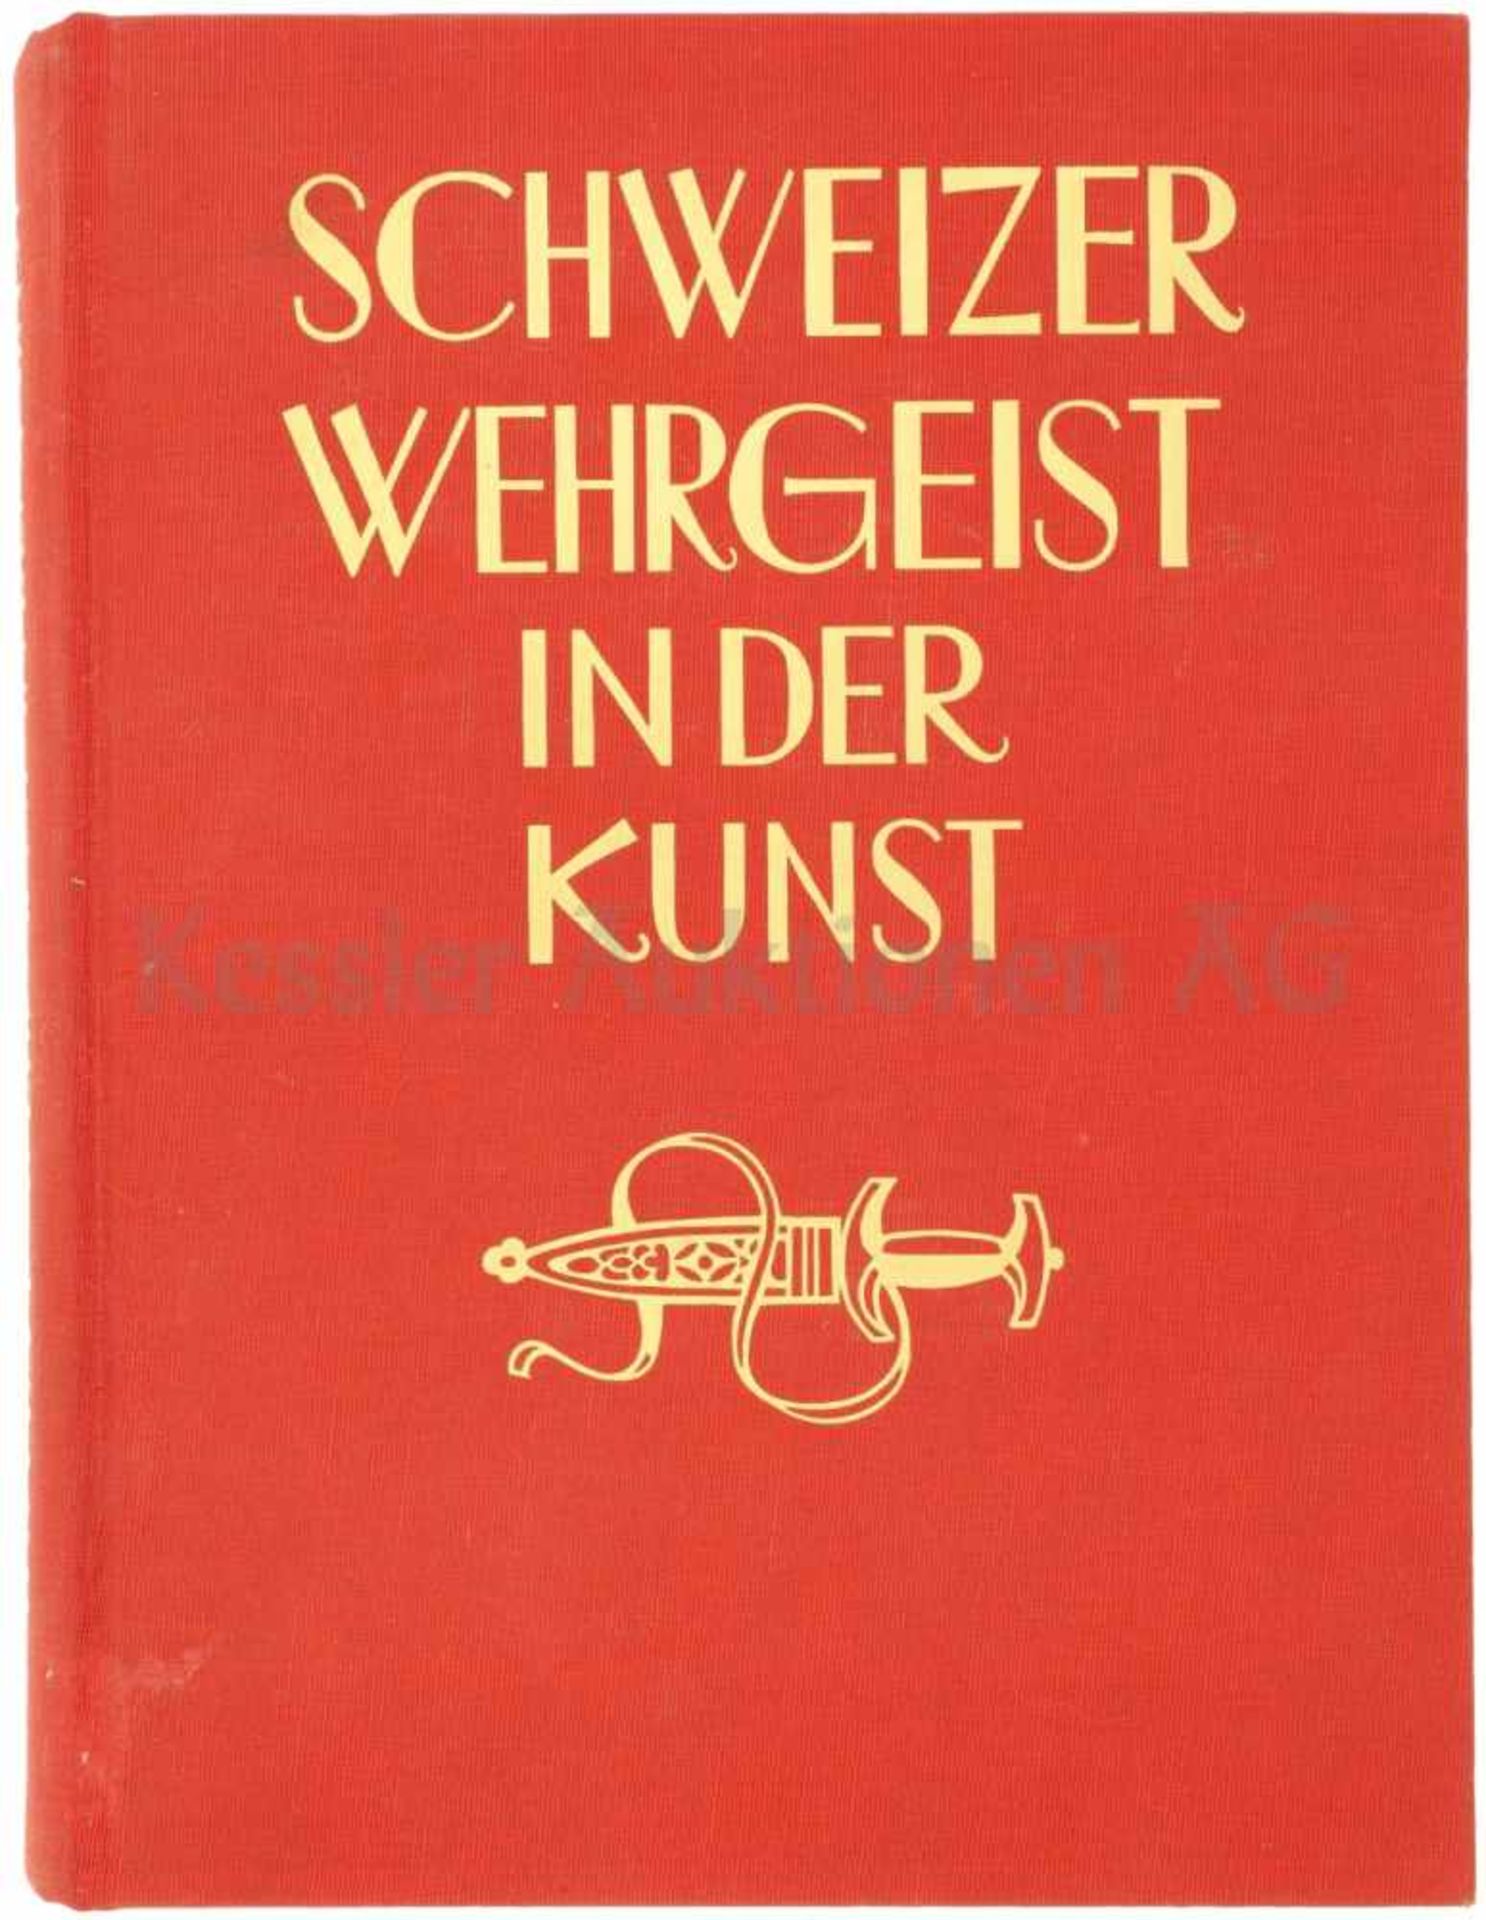 Schweizer Wehrgeist in der Kunst 1938 herausgegebenes Buch über die Kunst im Zusammenhang mit der